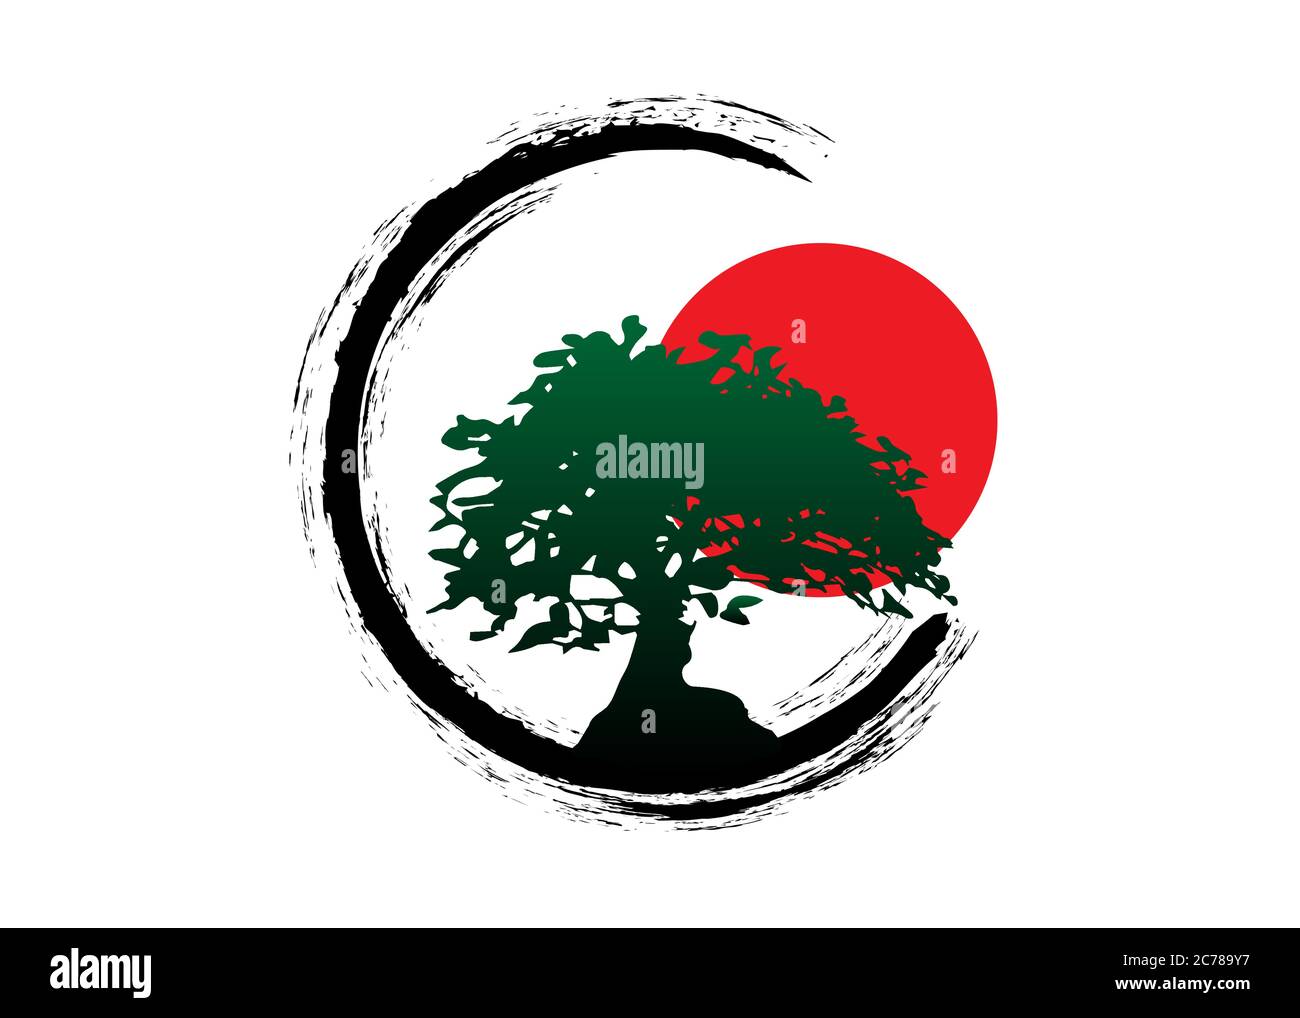 Logo de bonsaï japonais, icônes de silhouette de plante noire sur fond blanc, silhouette écologique verte de bonsaï et coucher de soleil rouge. Image détaillée Illustration de Vecteur